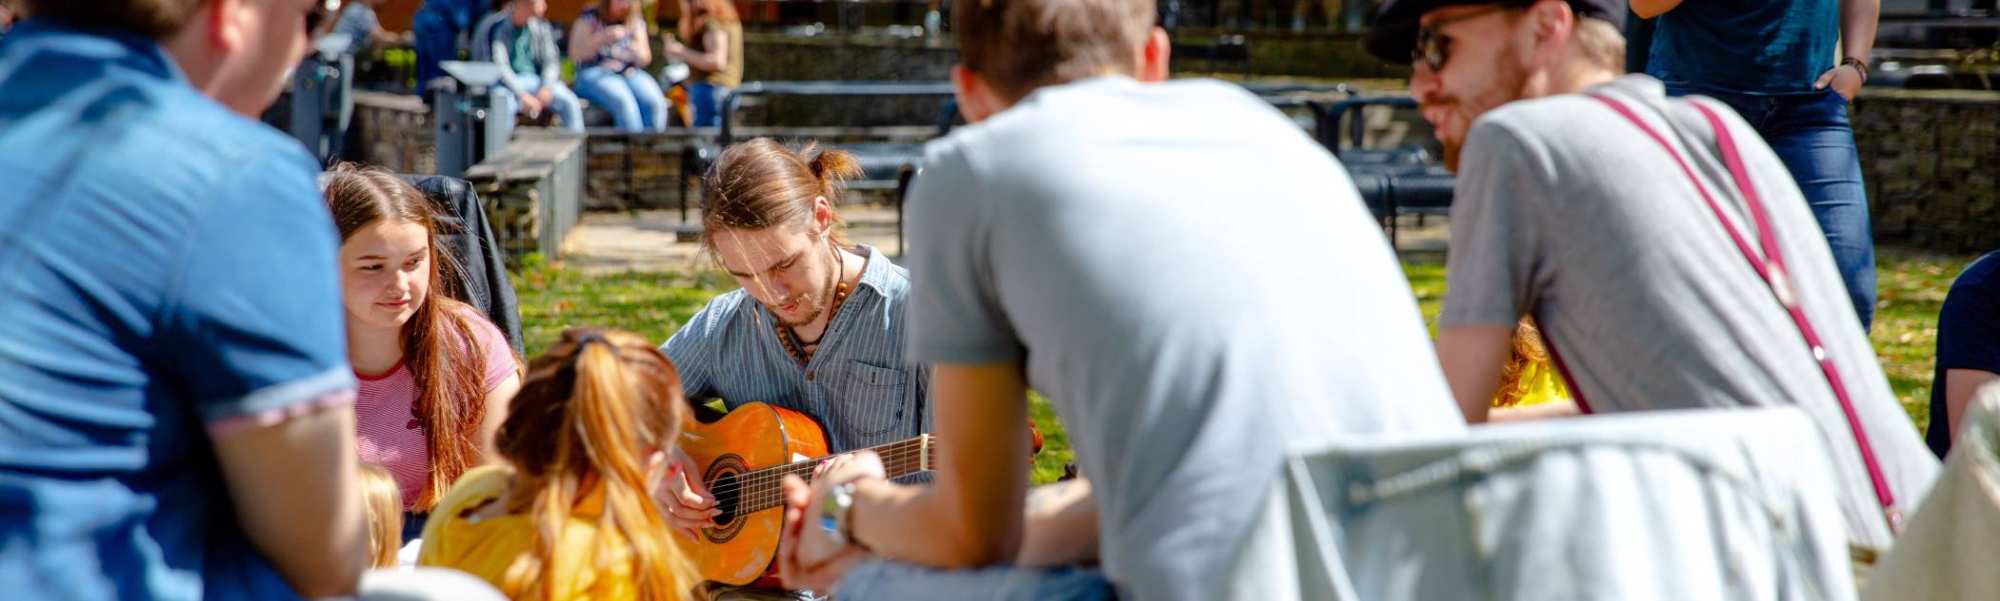 studenten buiten met gitaar